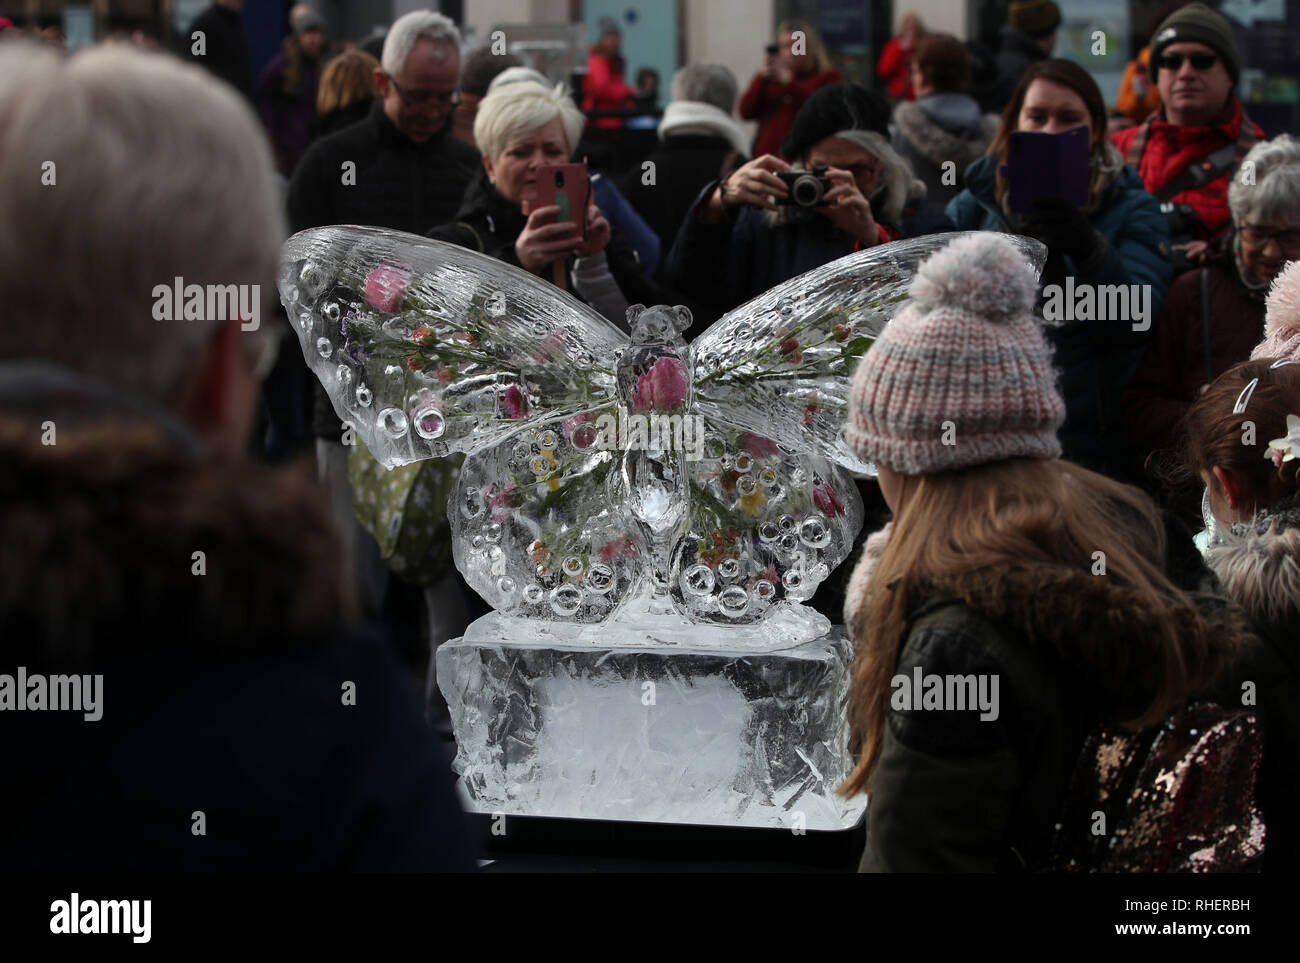 Les membres du public avec une sculpture de glace d'un papillon, une partie du sentier de glace de New York, dans le Yorkshire, après une nuit de neige hier et devraient entraîner des troubles. Banque D'Images